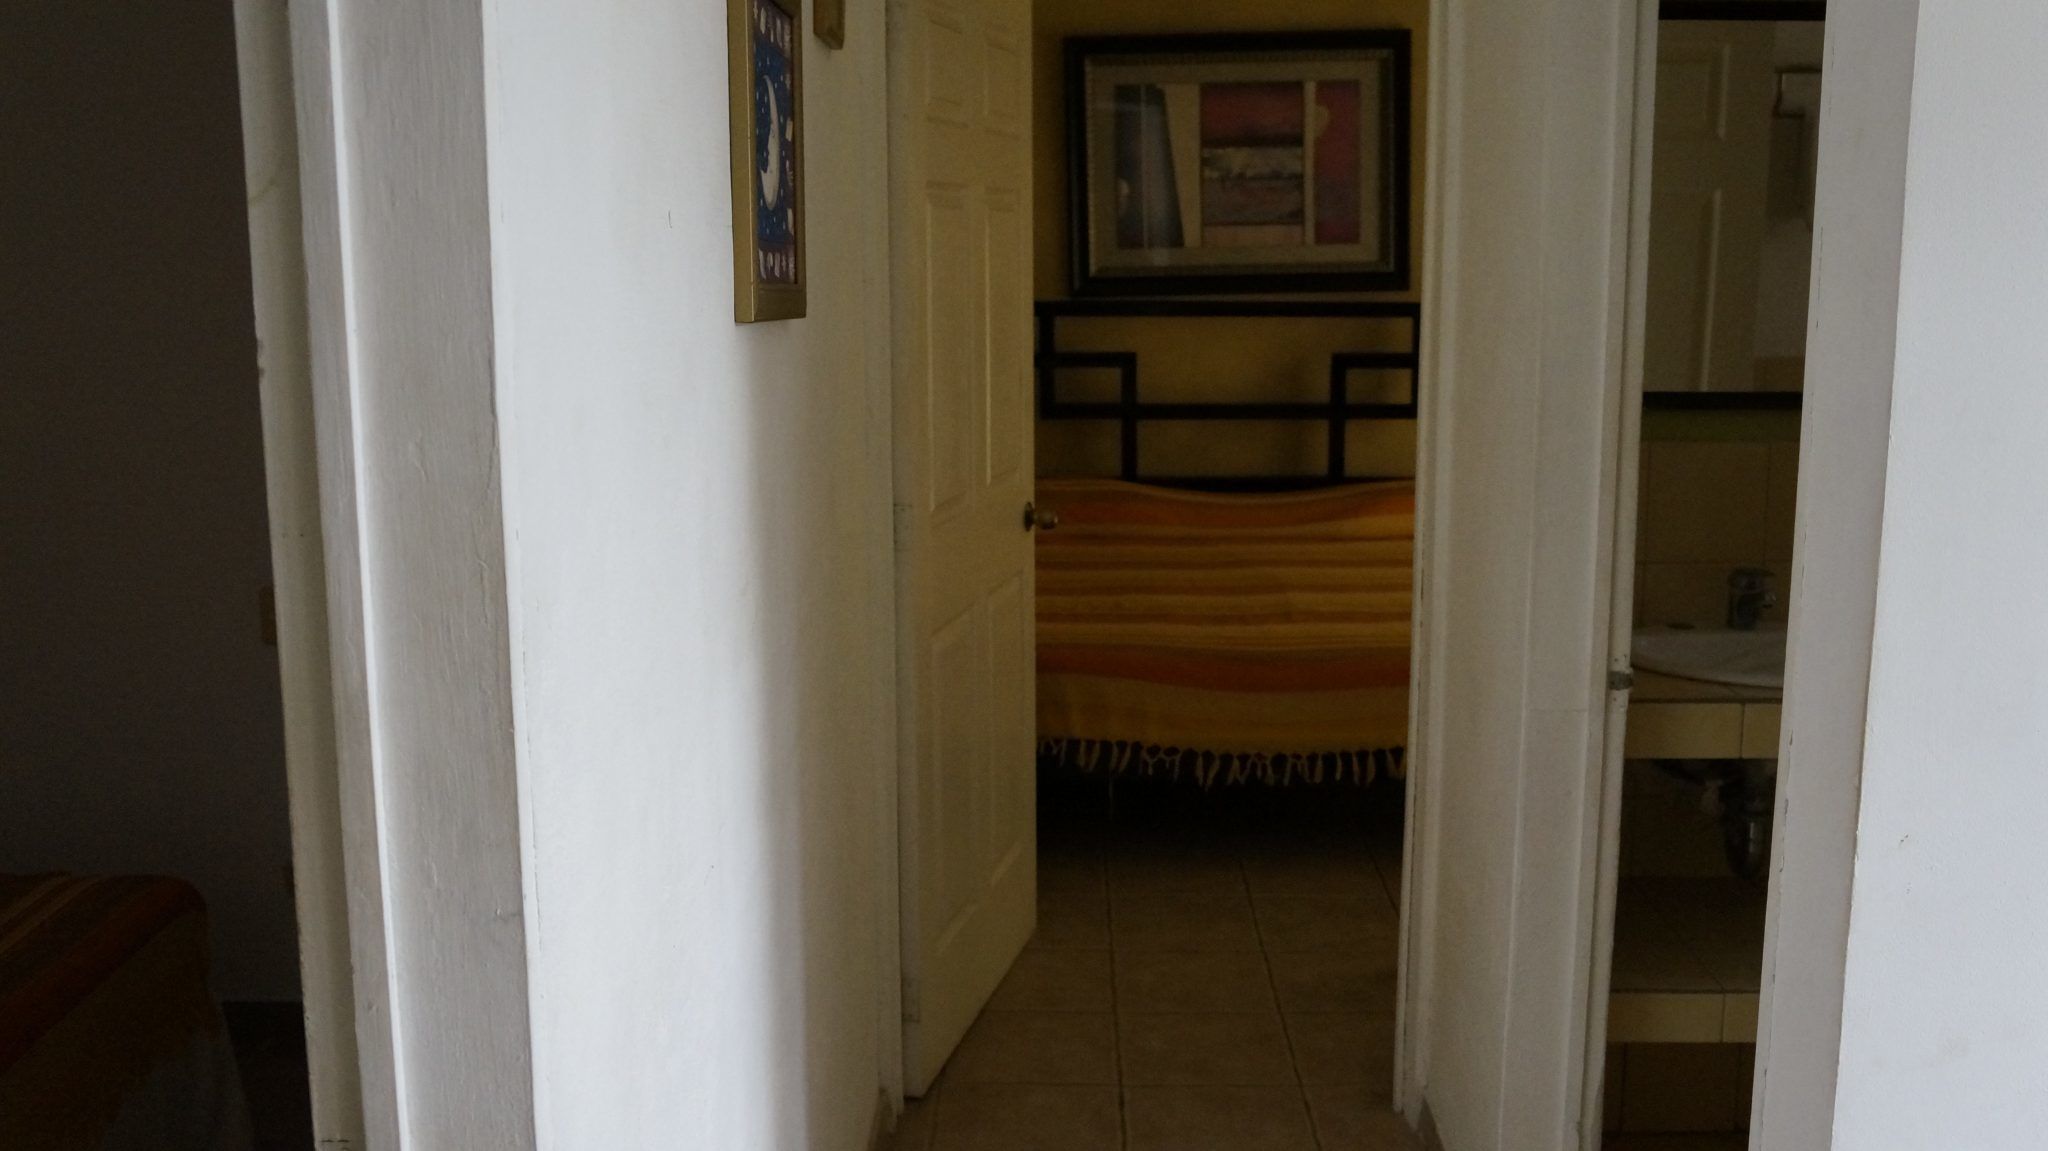 E14 - Hallway